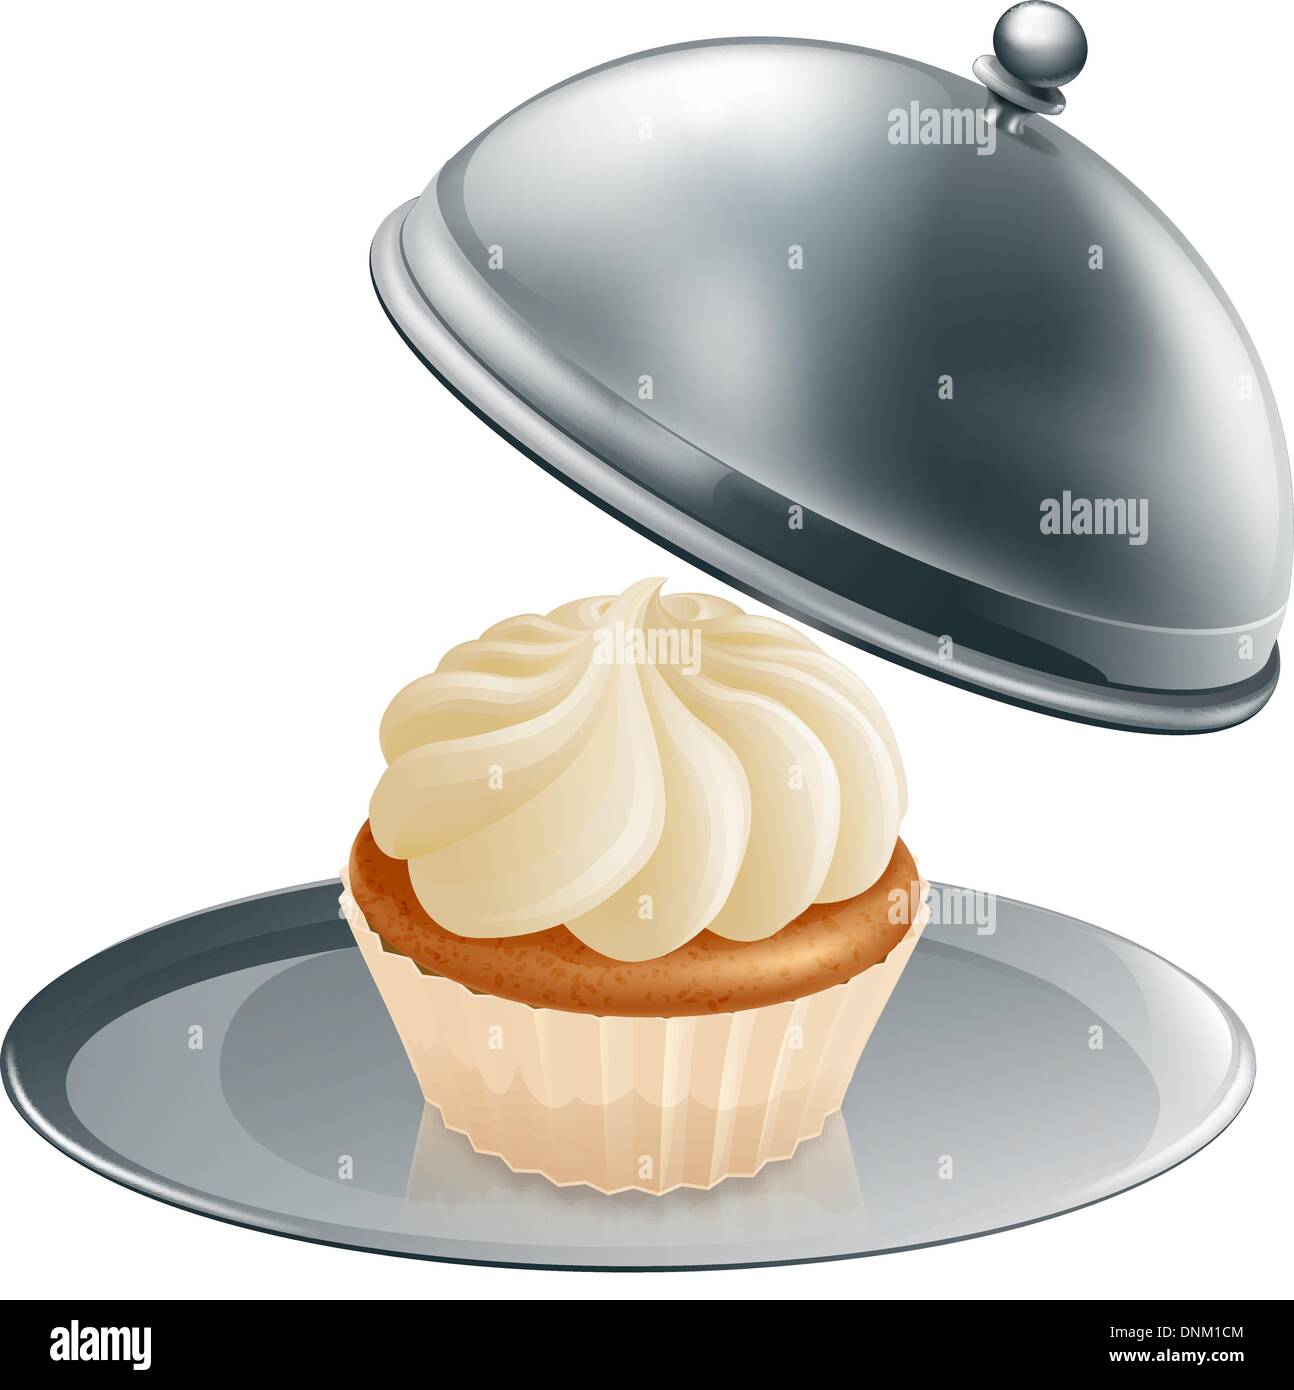 Ein Cupcake oder Muffin auf dem Silbertablett Konzept Gourmet Backen oder ein besonderes Erlebnis während einer Diät wäre. Stock Vektor